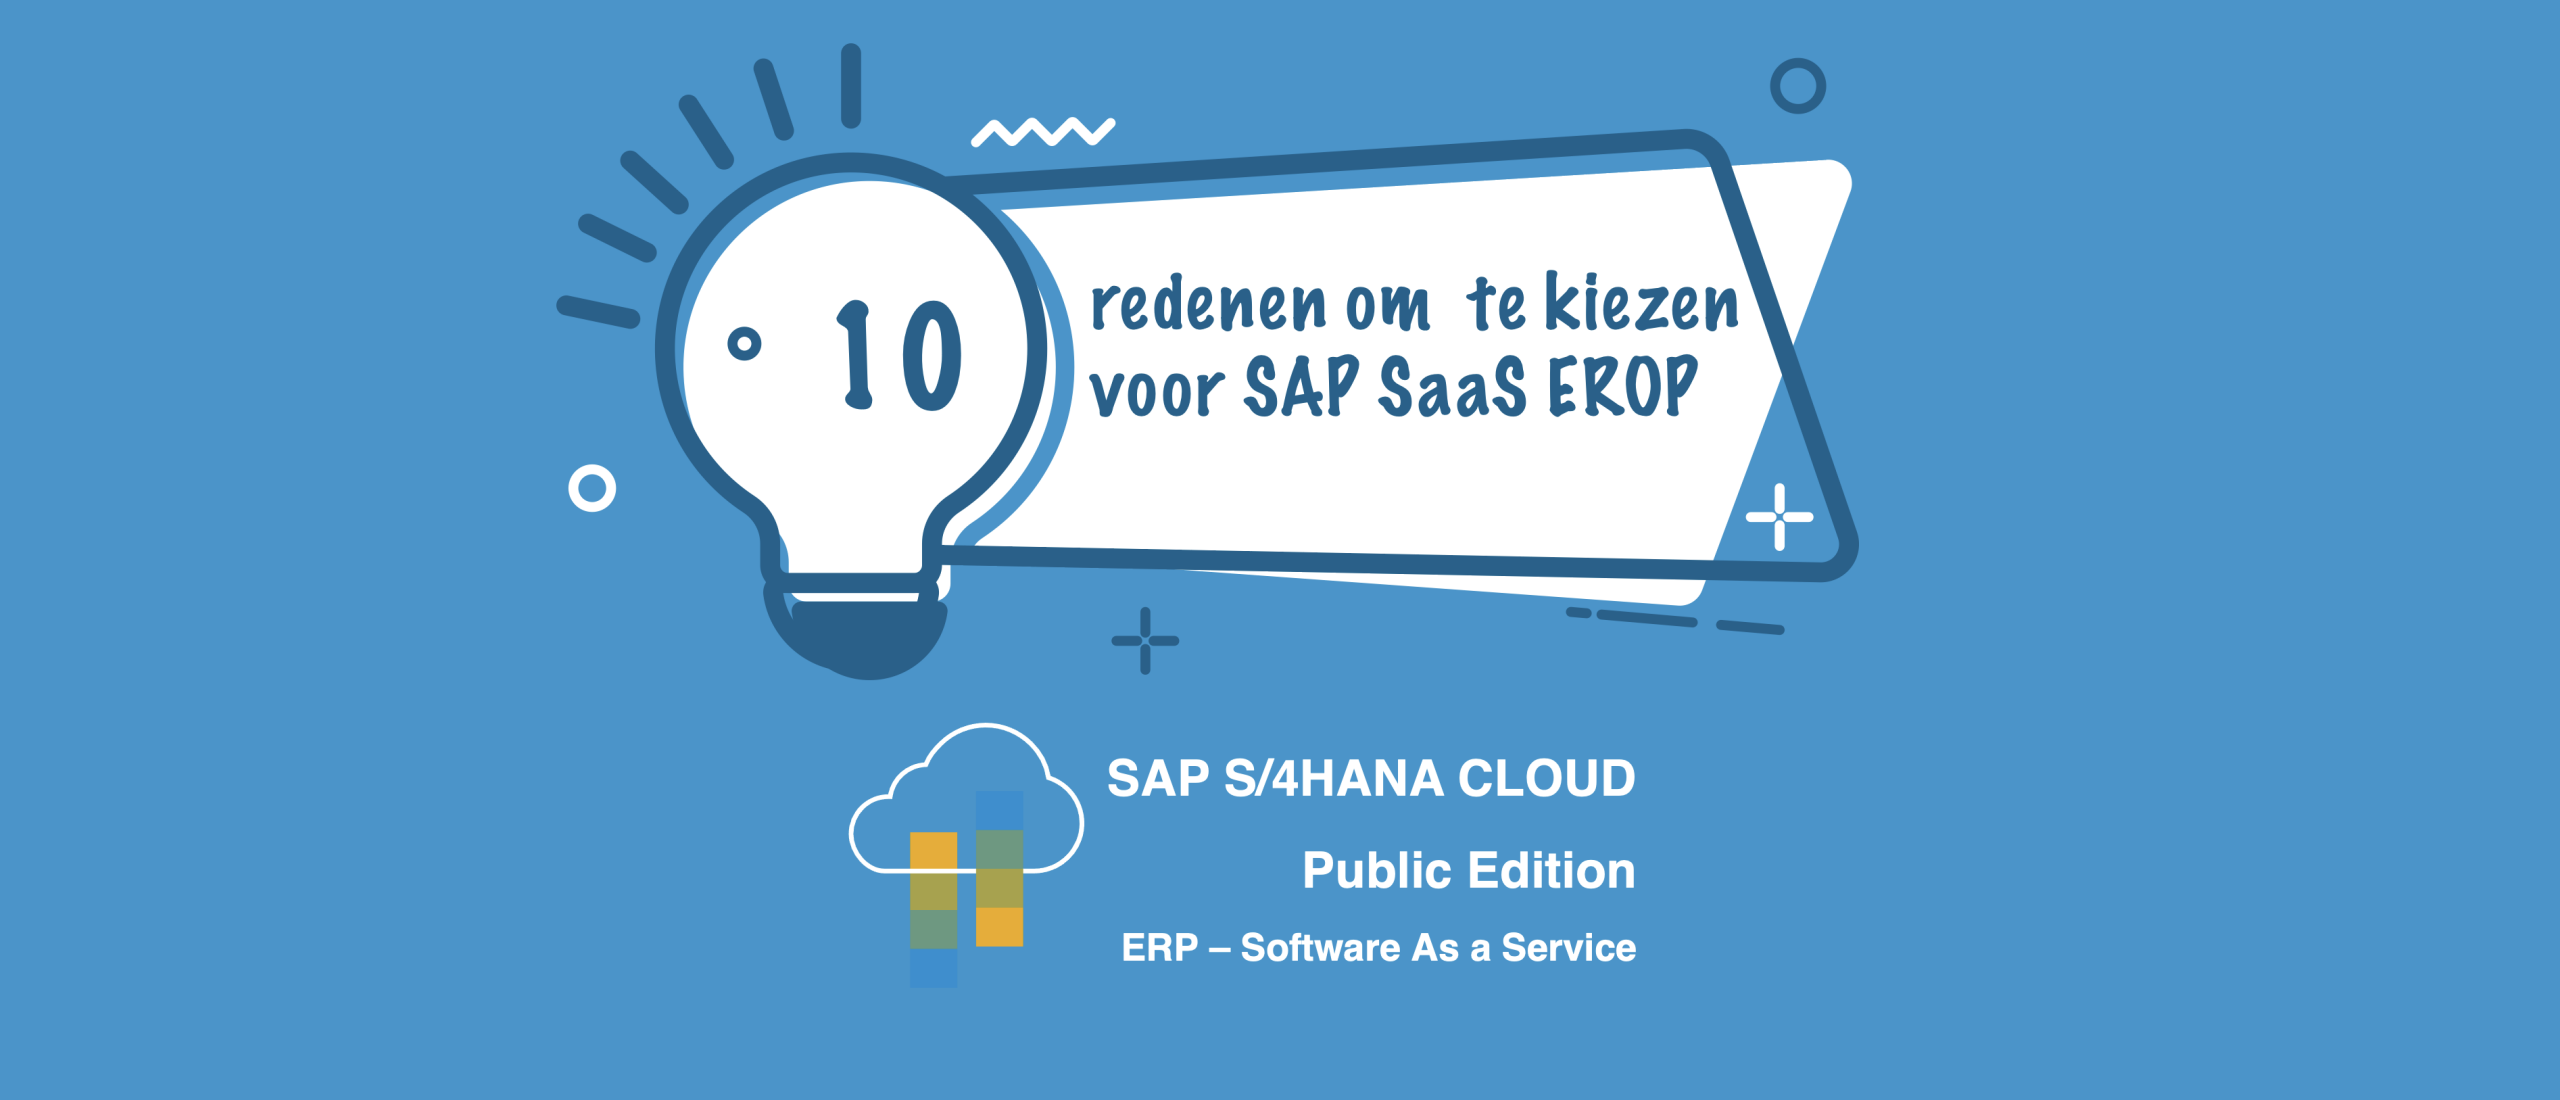 10 redenen om voor SAP SaaS ERP te kiezen | SAP S/4HANA Cloud, Public Edition